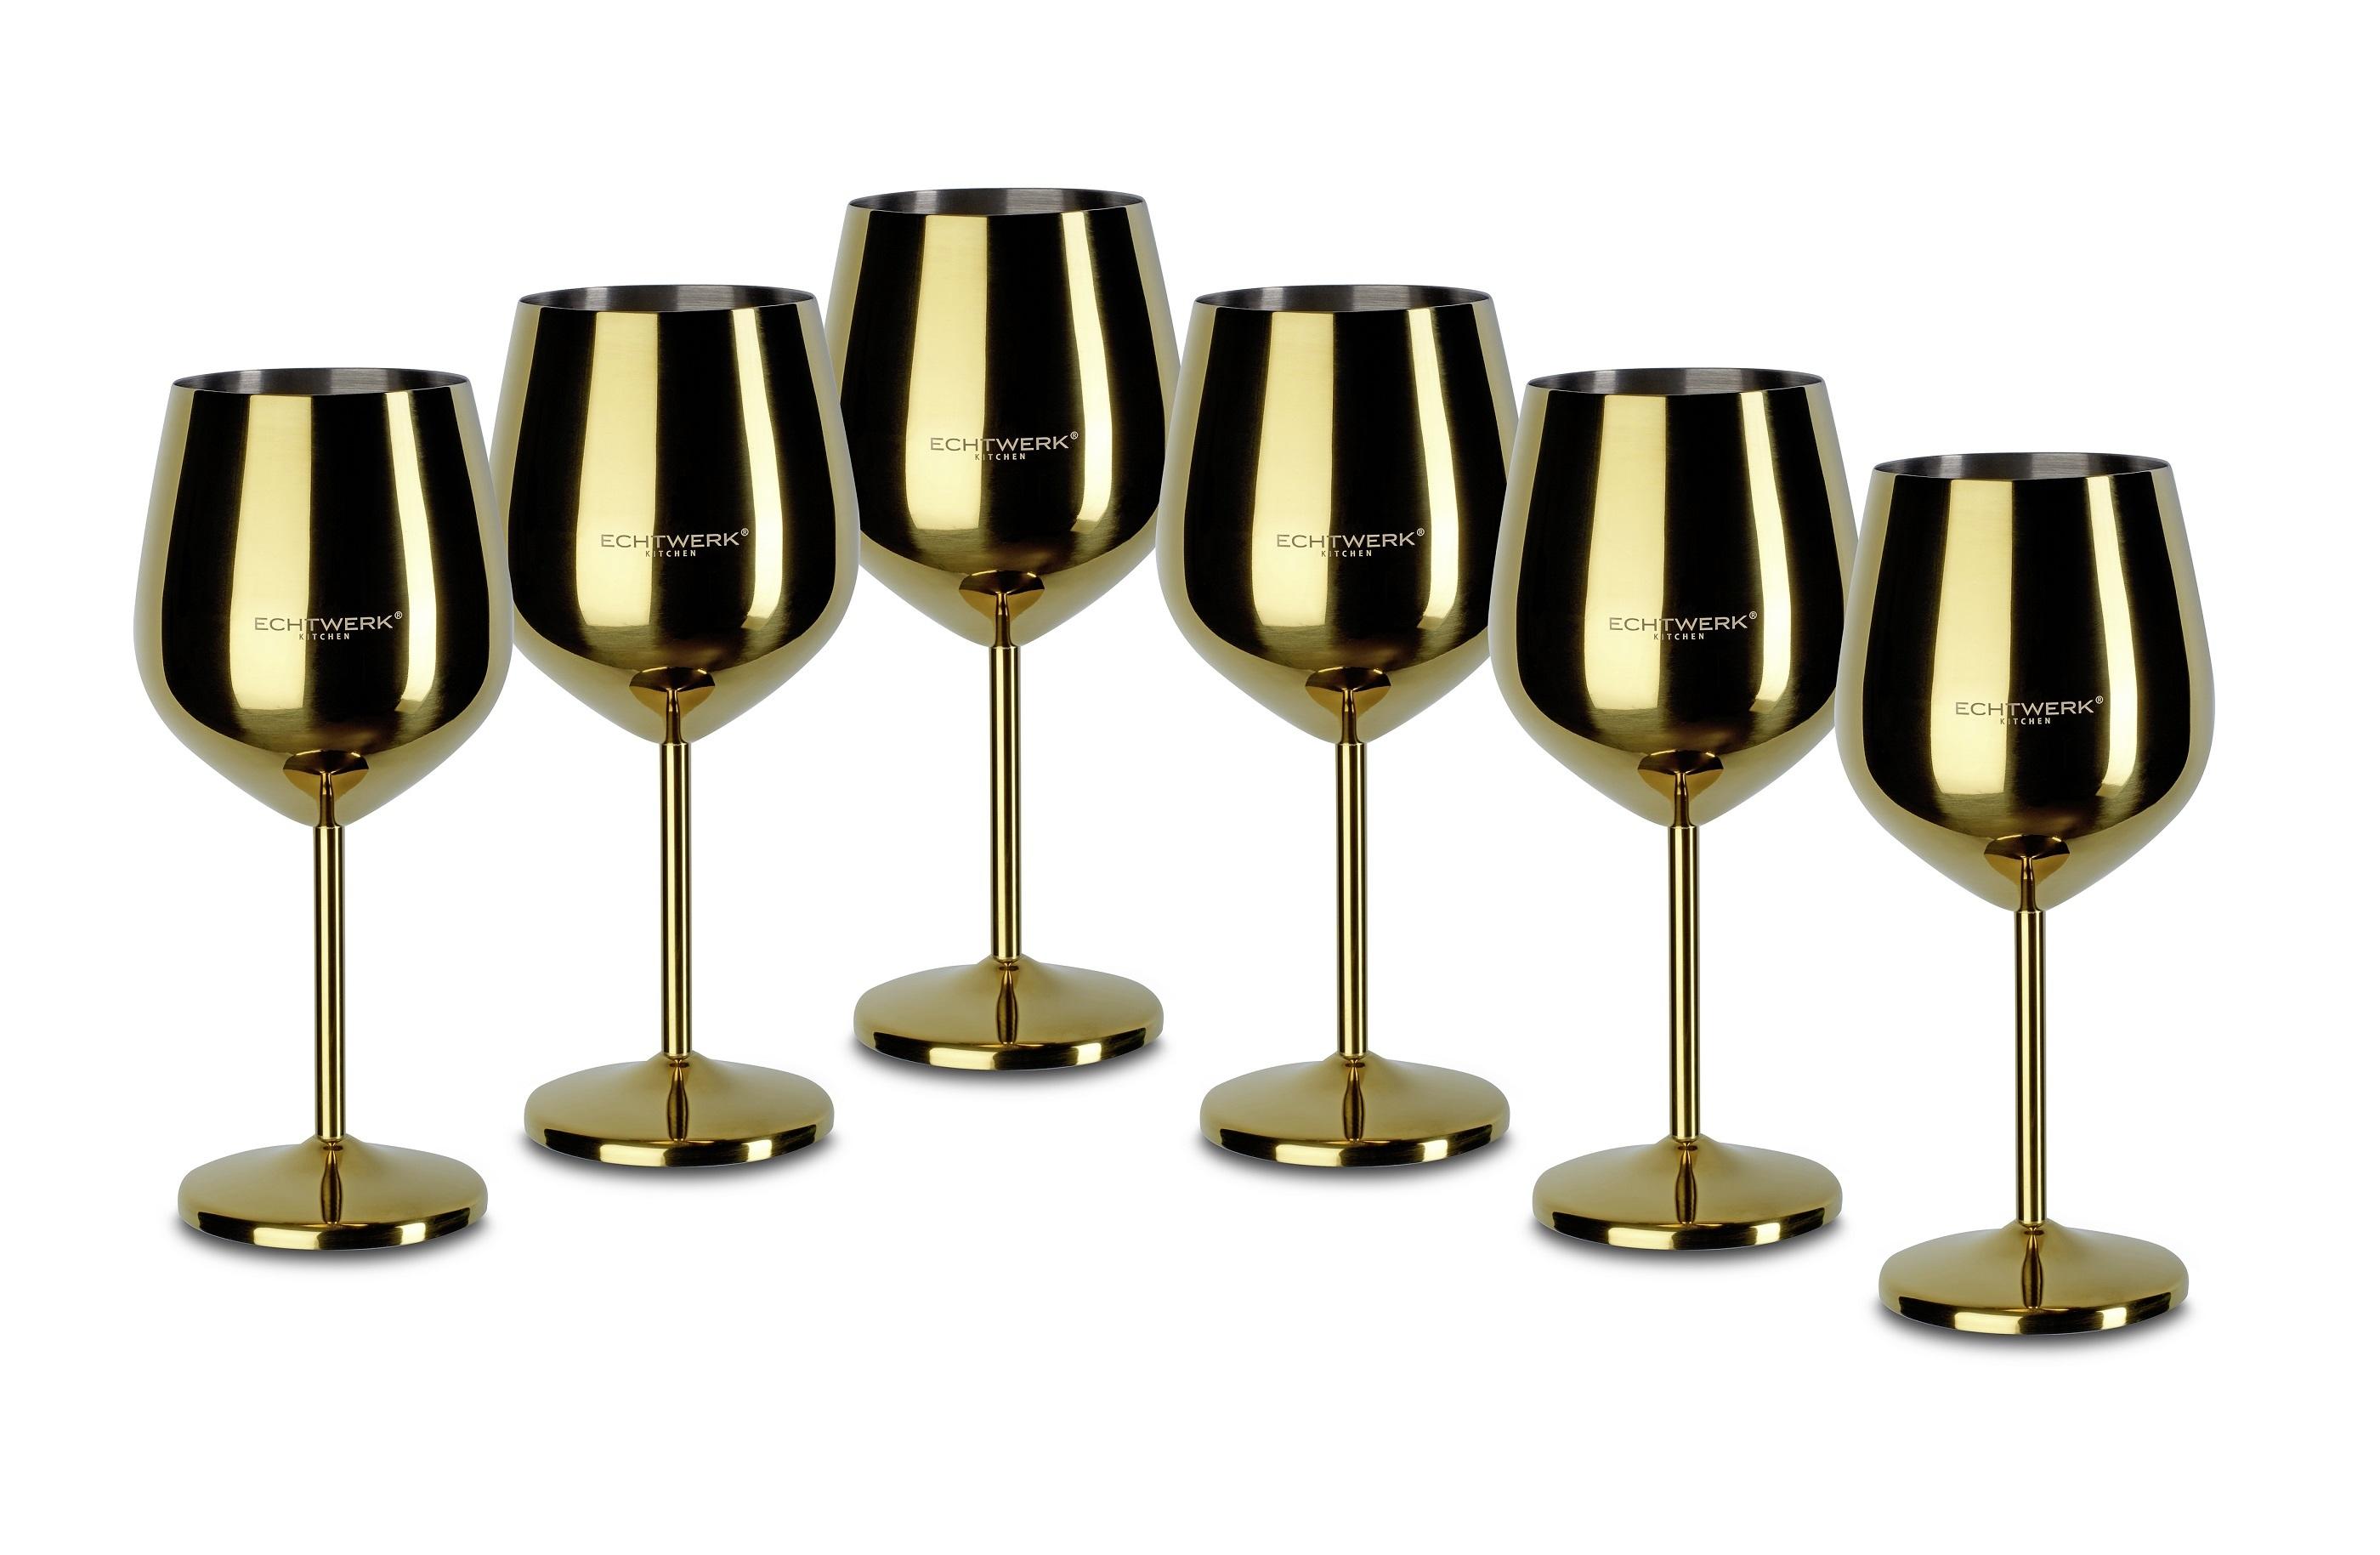 Sechs Weingläser aus Metall Goldfarben in kaufen